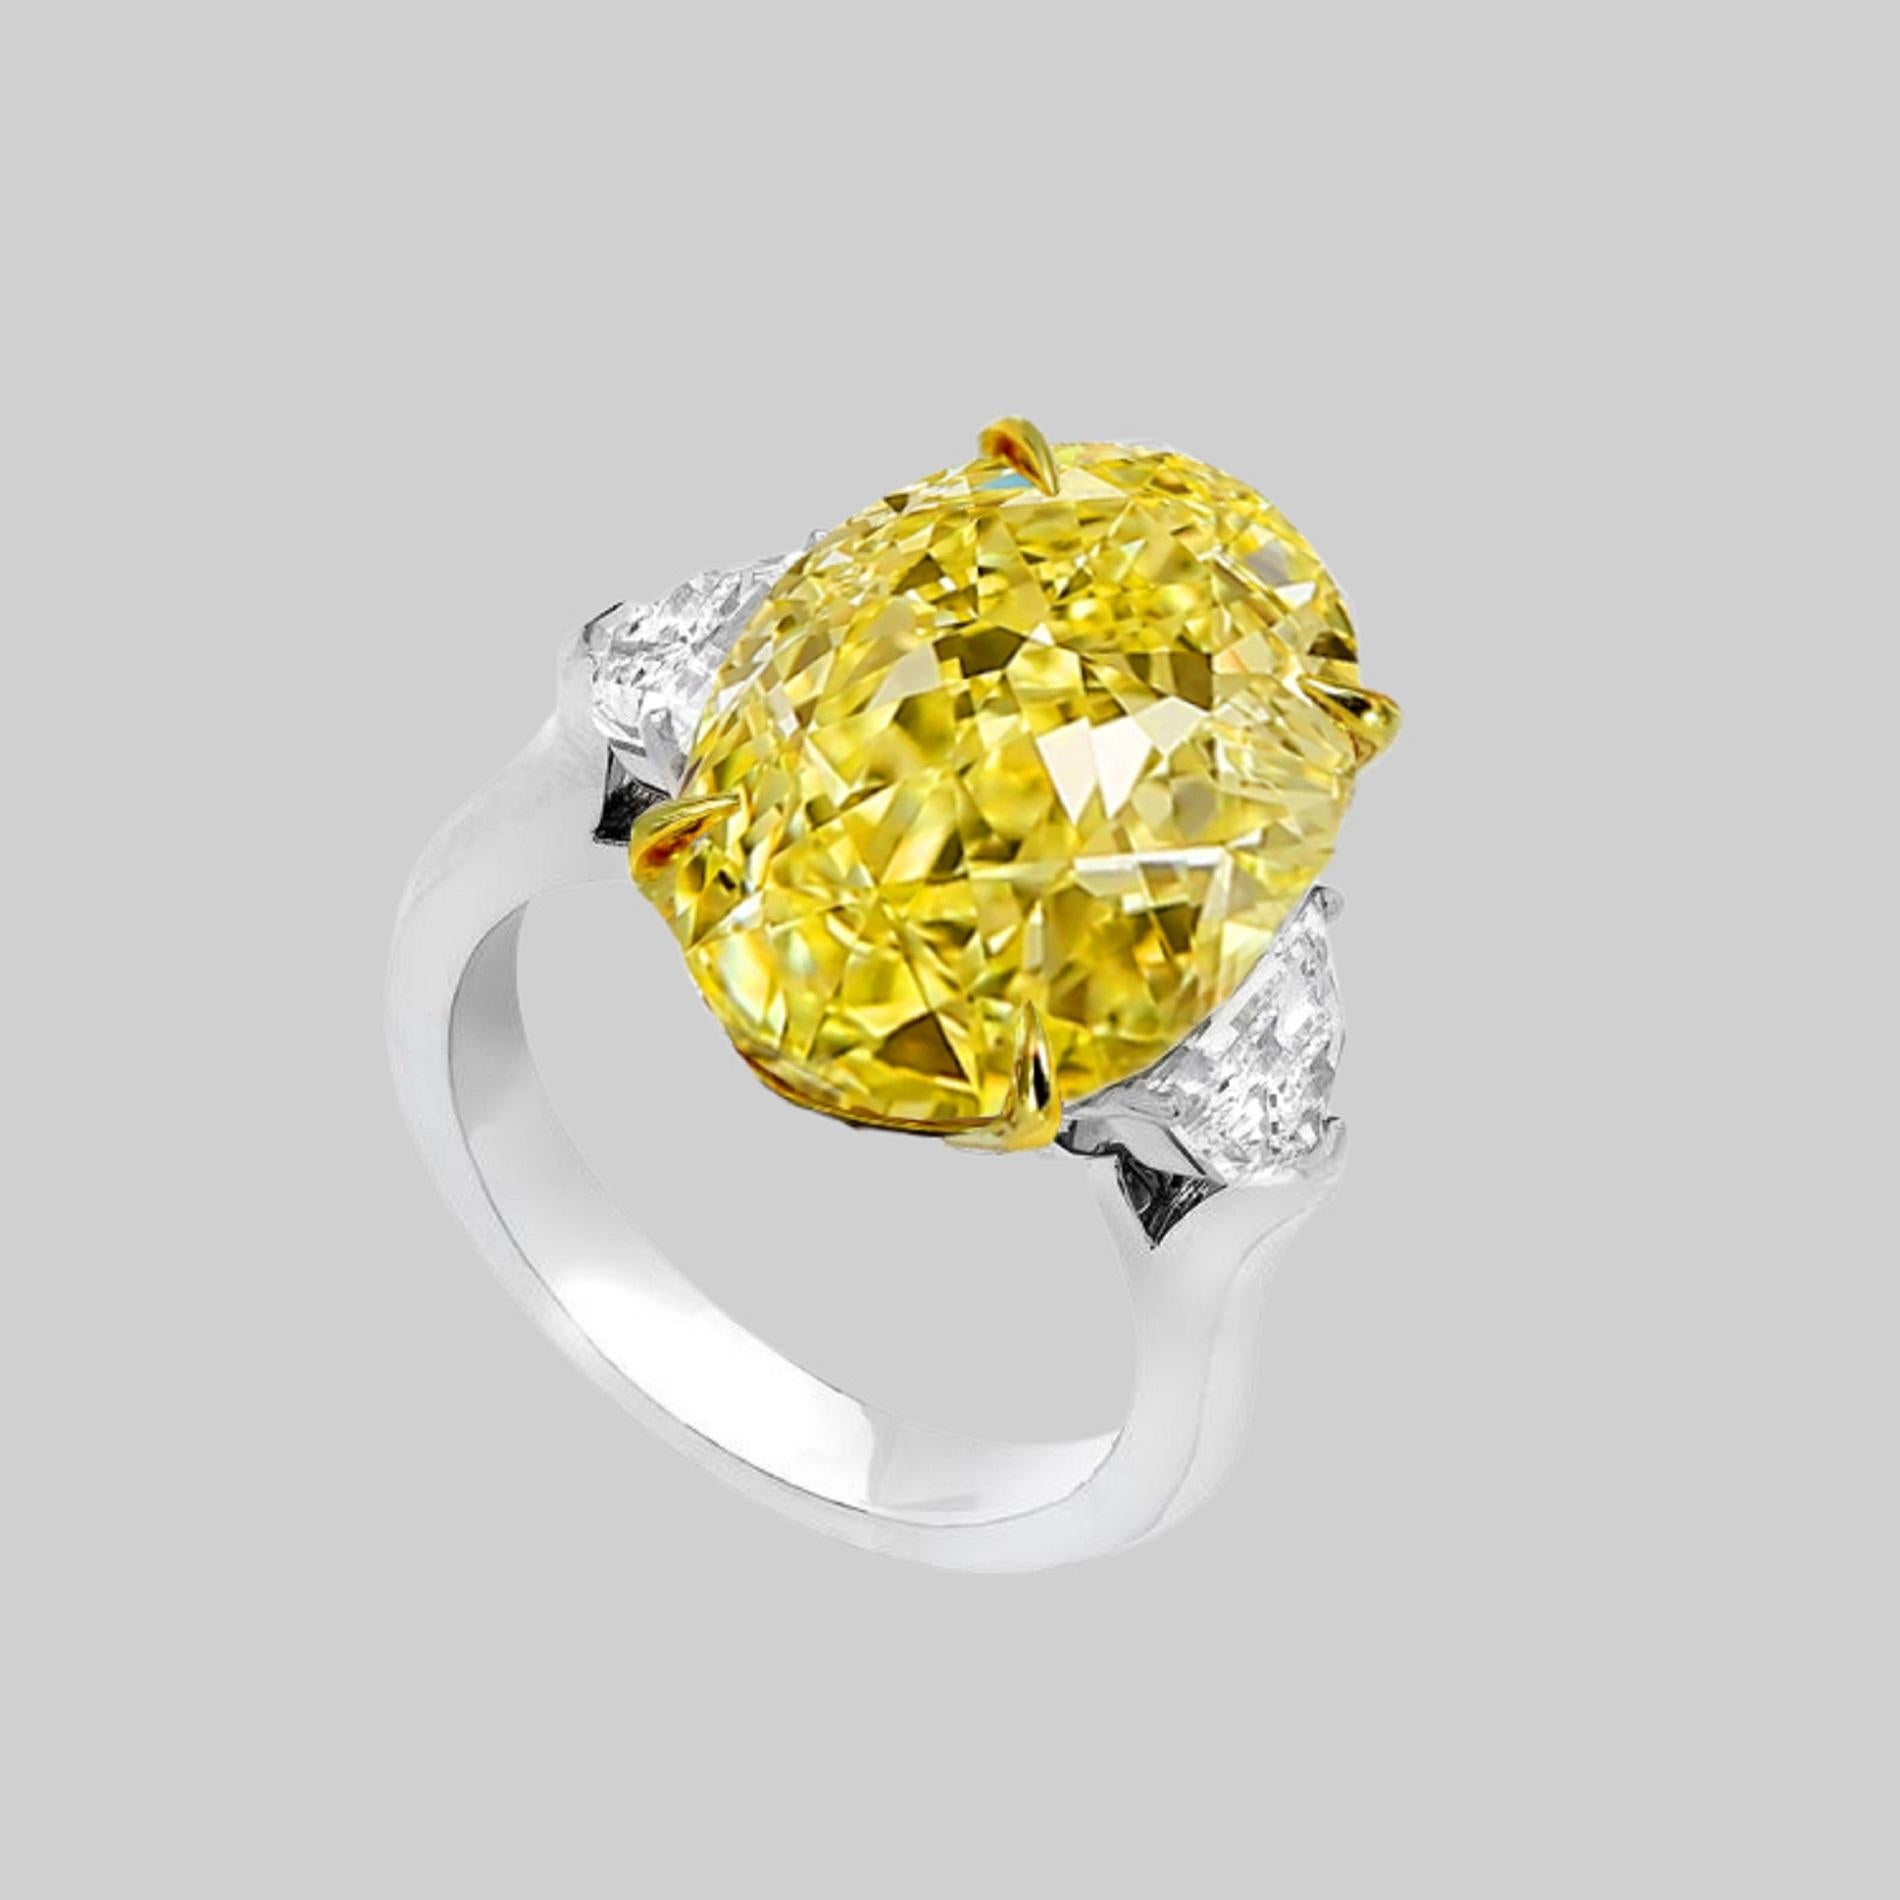 Un diamant ovale de 8 carats de couleur naturelle jaune intense, flanqué sur les côtés de deux diamants demi-lune de 1 carat au total, de couleur F, VVS2.  clarté. Les trois pierres sont certifiées par le GIA (voir les photos du certificat pour des